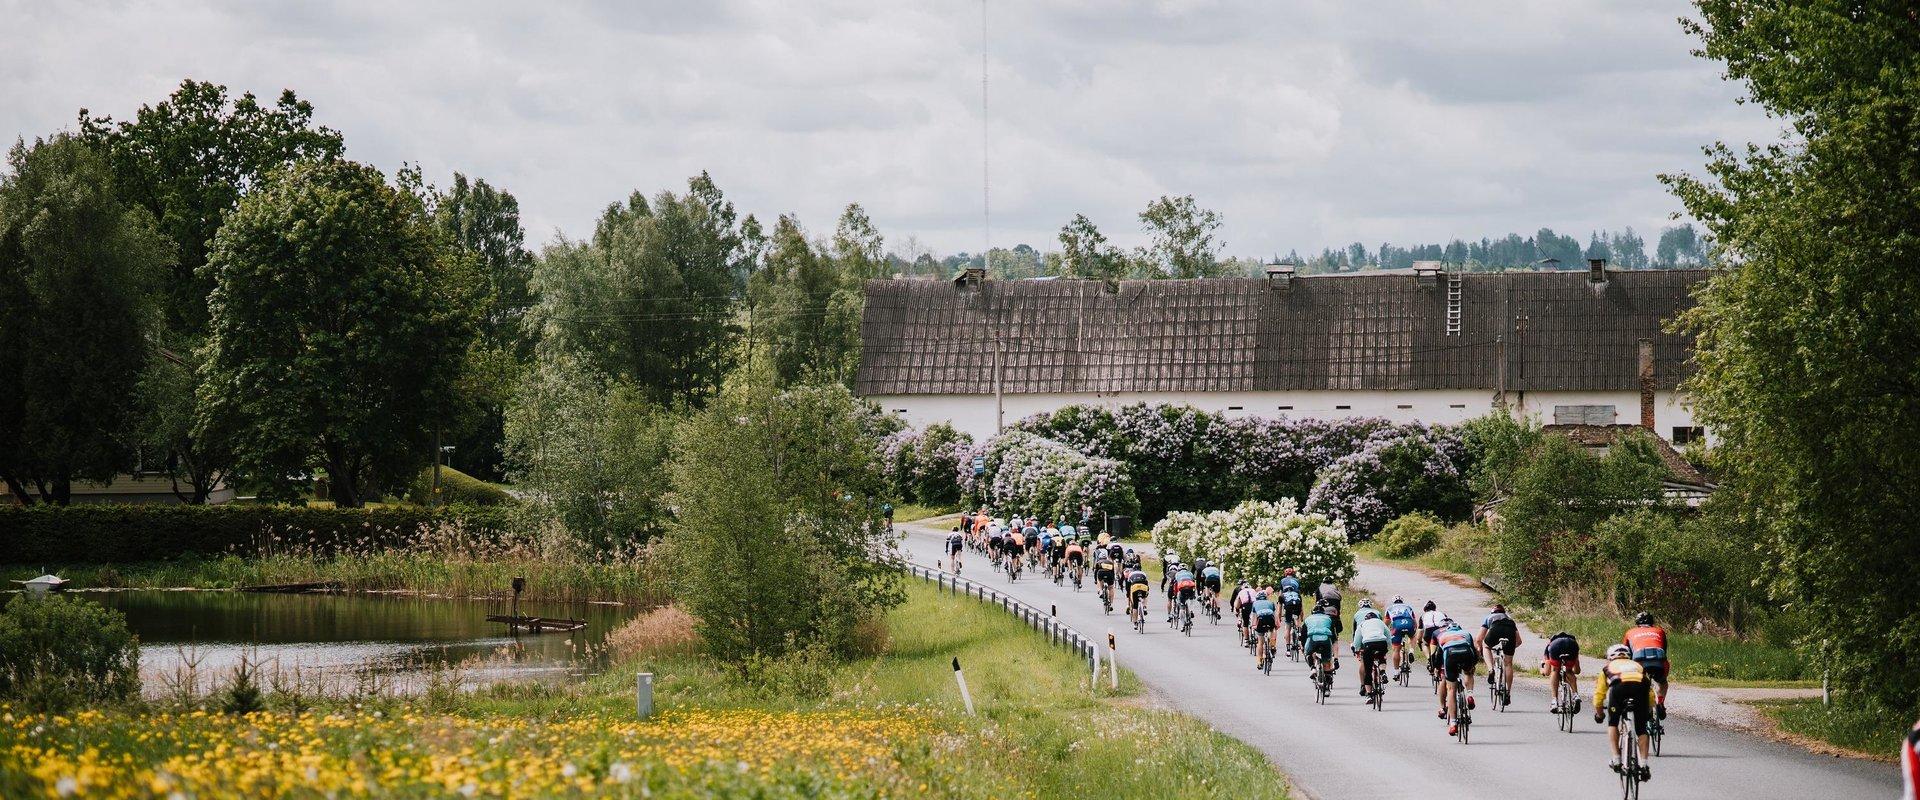 Am letzten Wochenende im Mai wird aus Tartu ein wirkliches Mekka für Radfahrer – es findet die Tartuer Fahrrad-Rallye mit ihrer würdigen Geschichte st